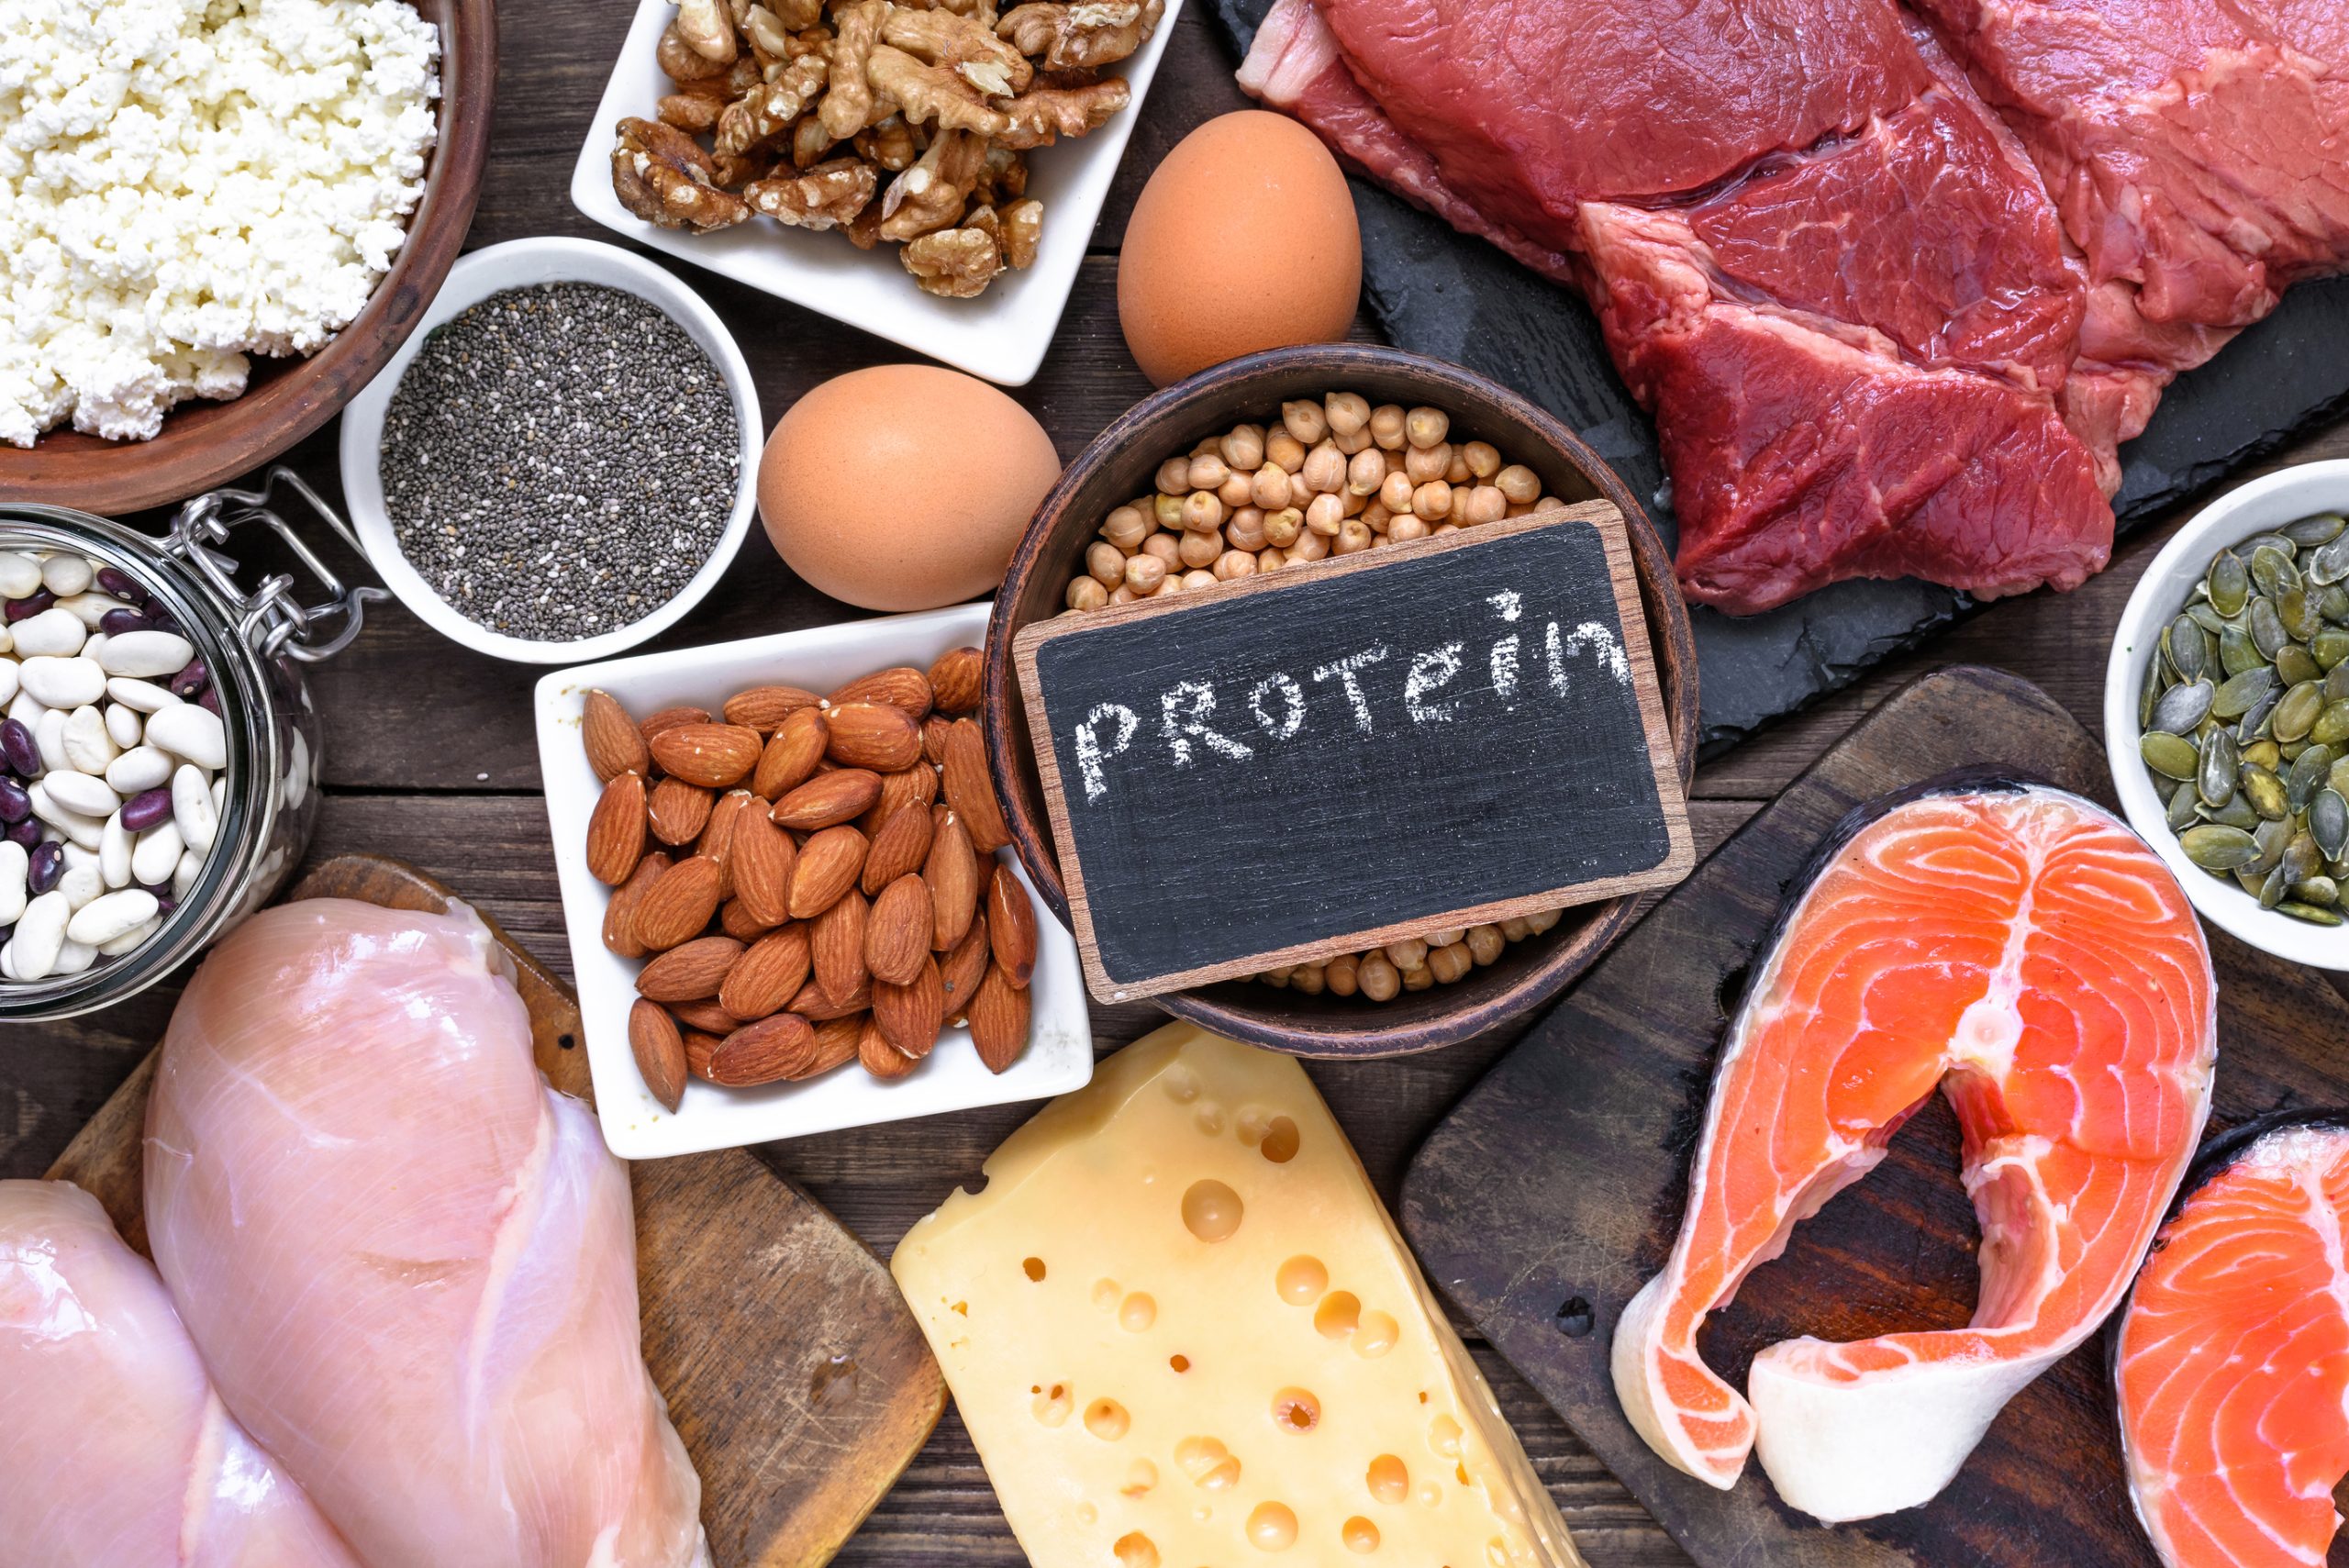 Φυτική ή ζωϊκή πρωτεΐνη; – Ποια είναι η καλύτερη επιλογή;